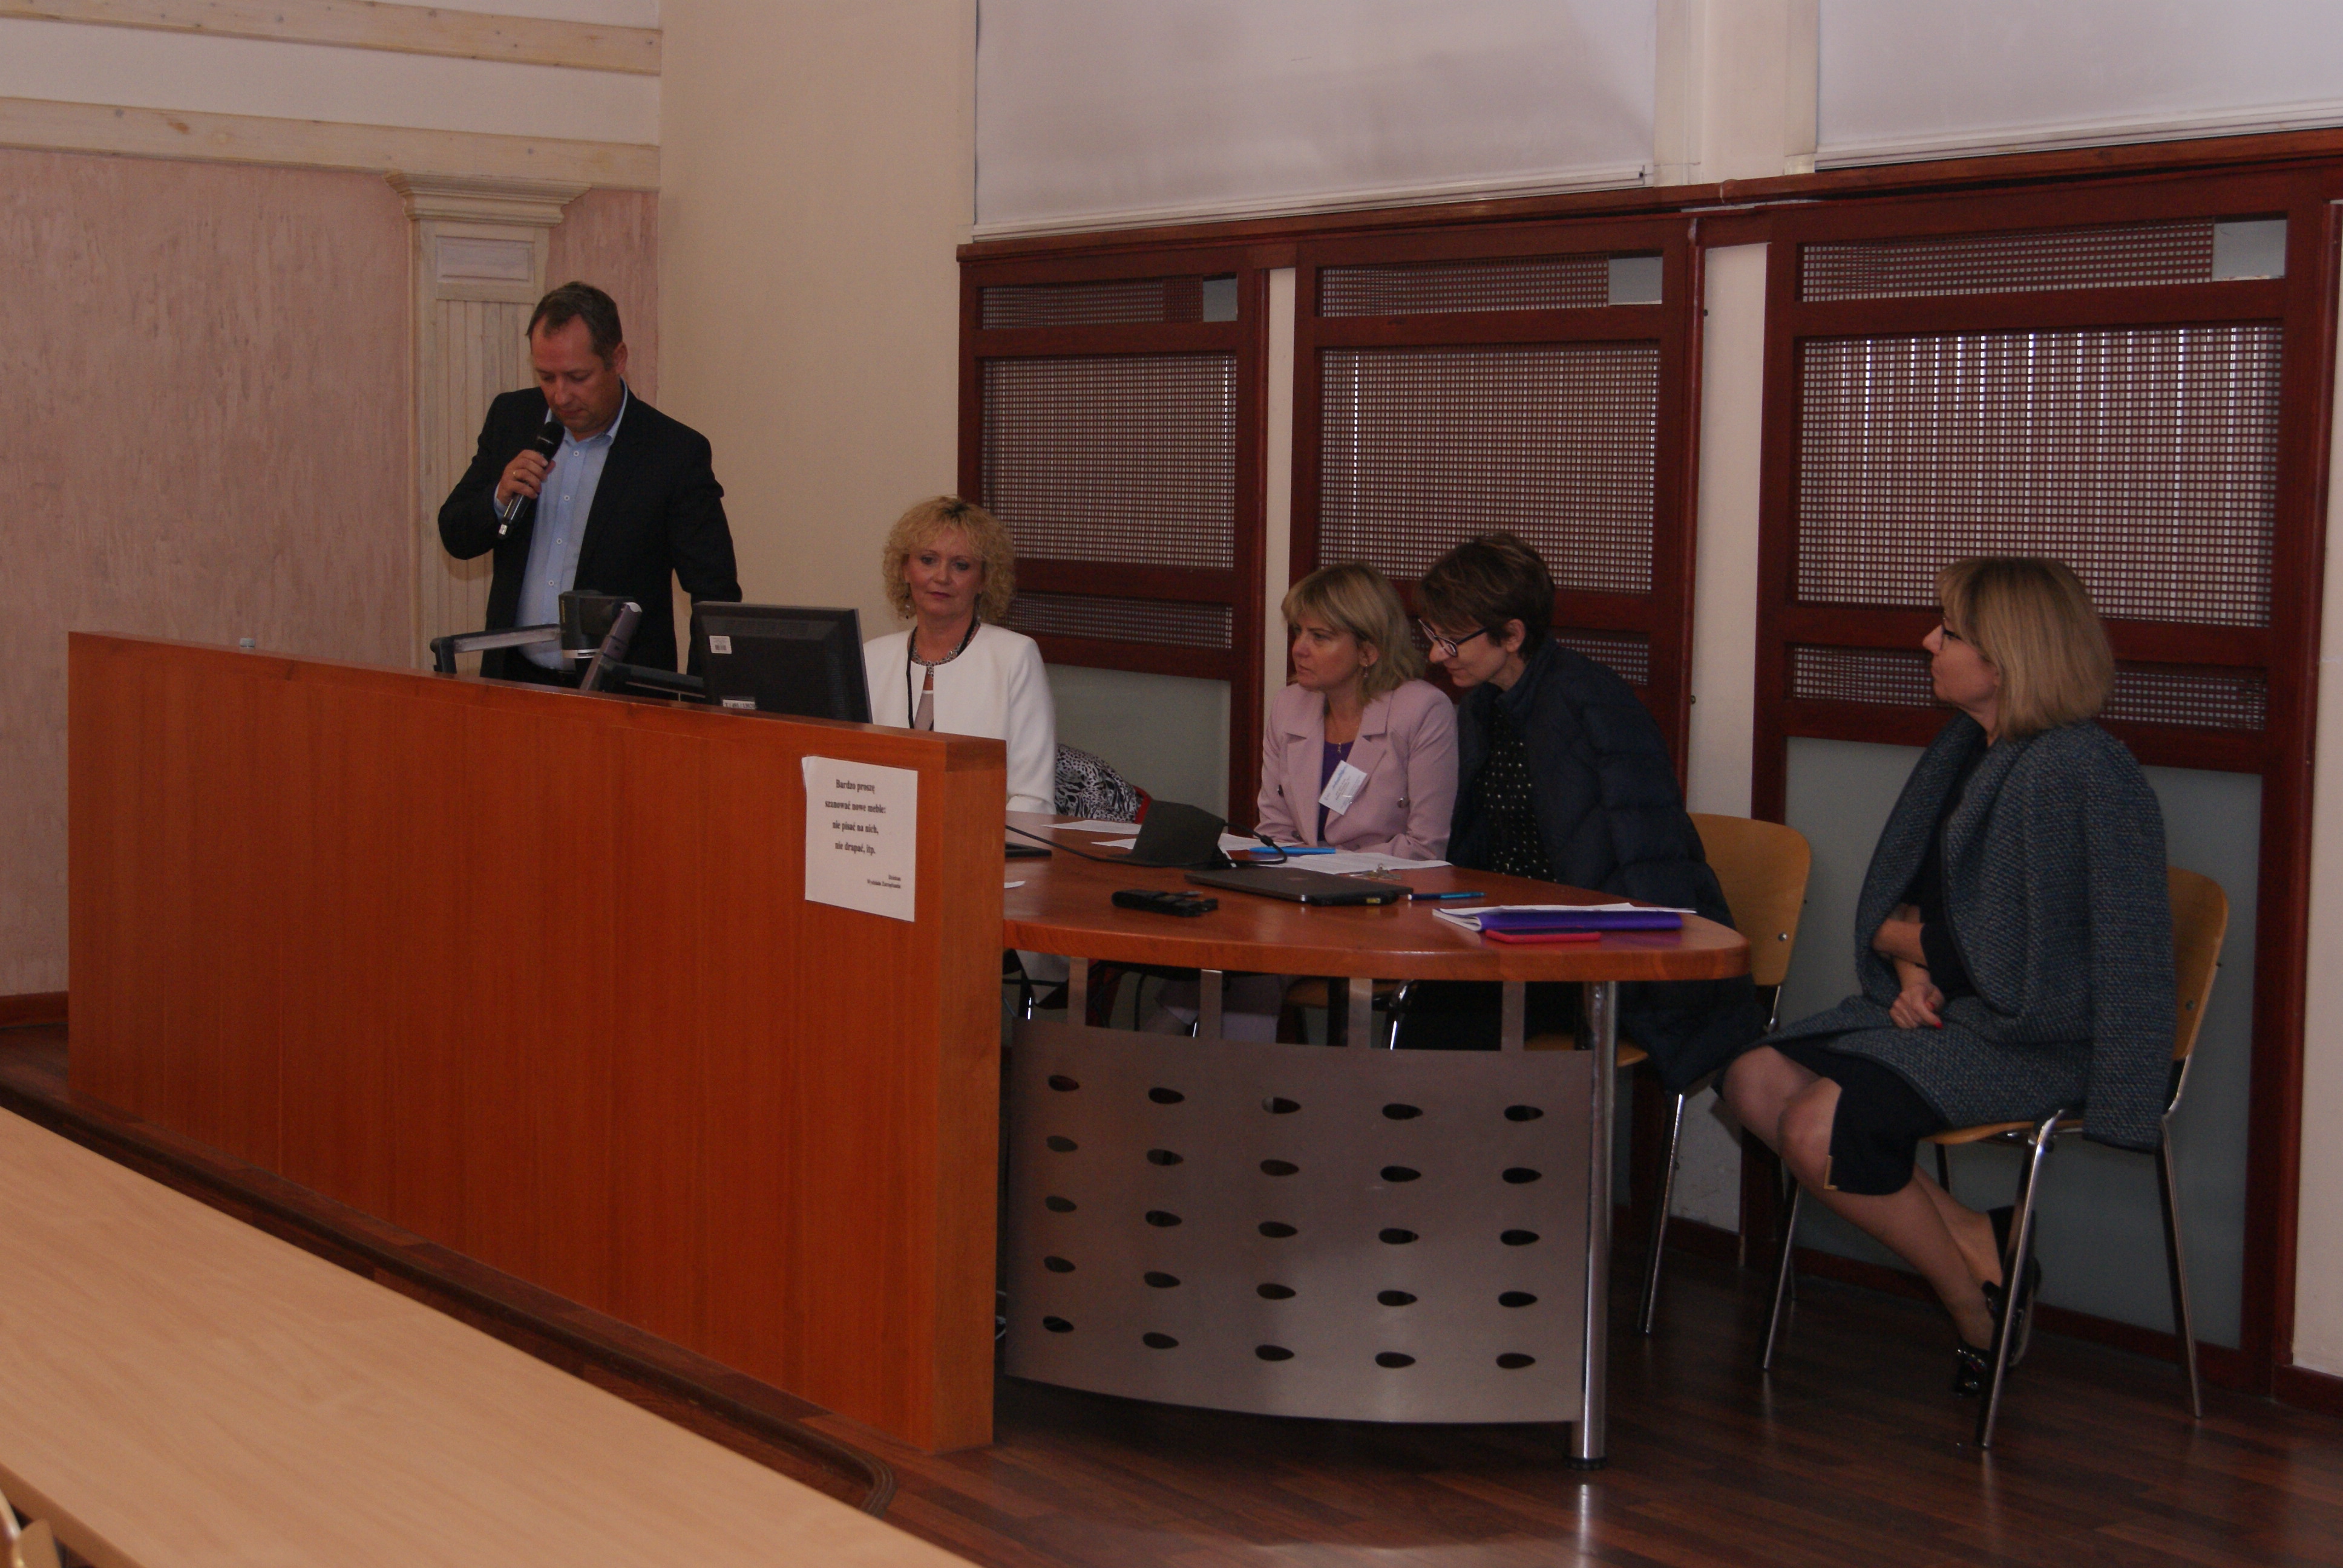 Региональный координатор ФСМЦ по Калининградской области Дмитрий Кашпаров выступил на конференции по финансовой грамотности в Польше